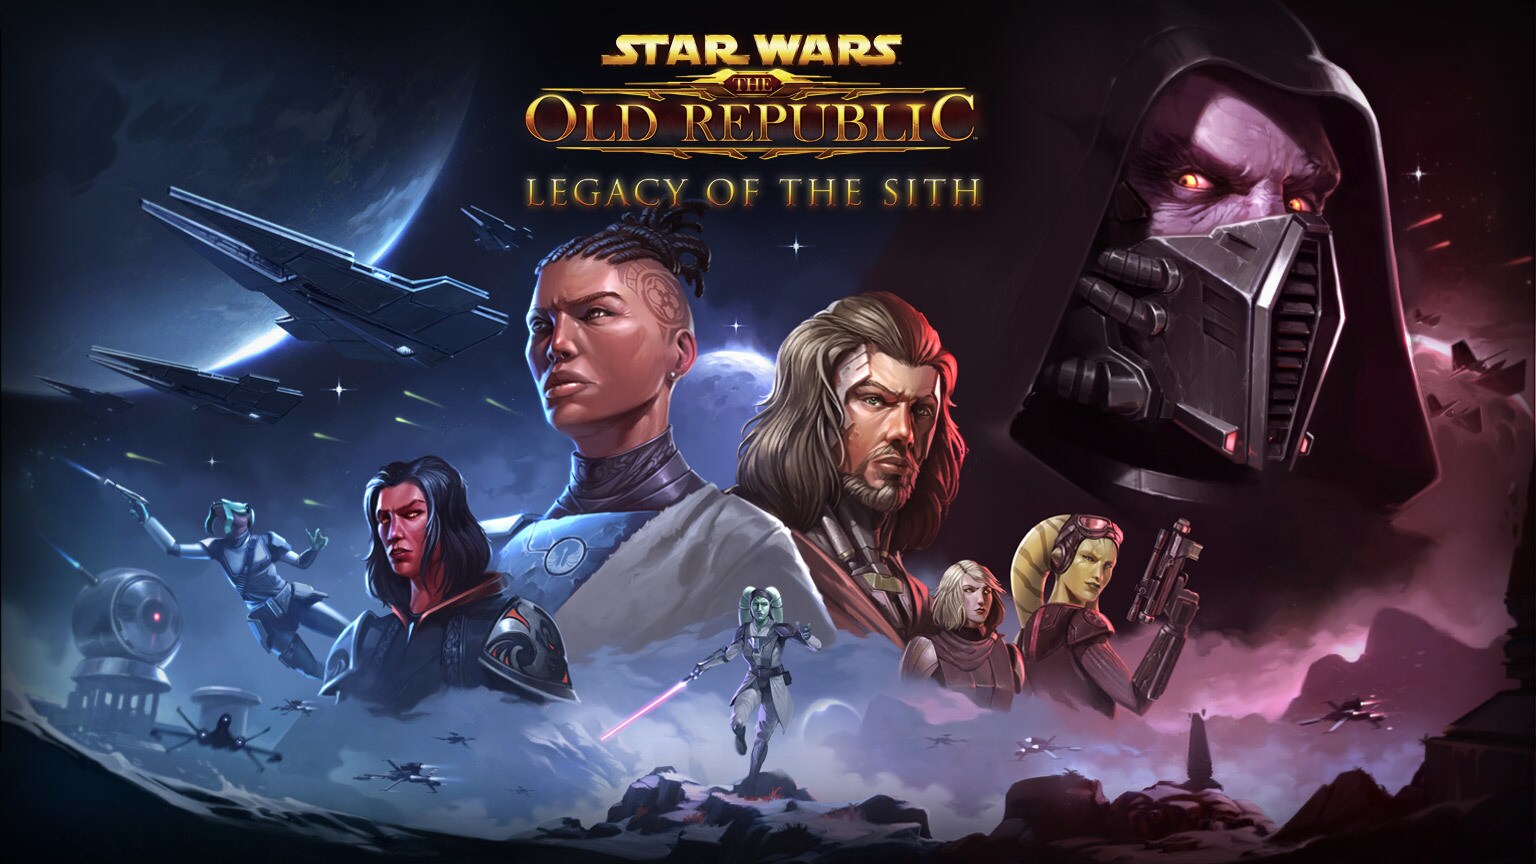 BioWare har bekräftat att en del av Star Wars: The Old Republic lämnar företaget när spelet flyttas till en annan utvecklare